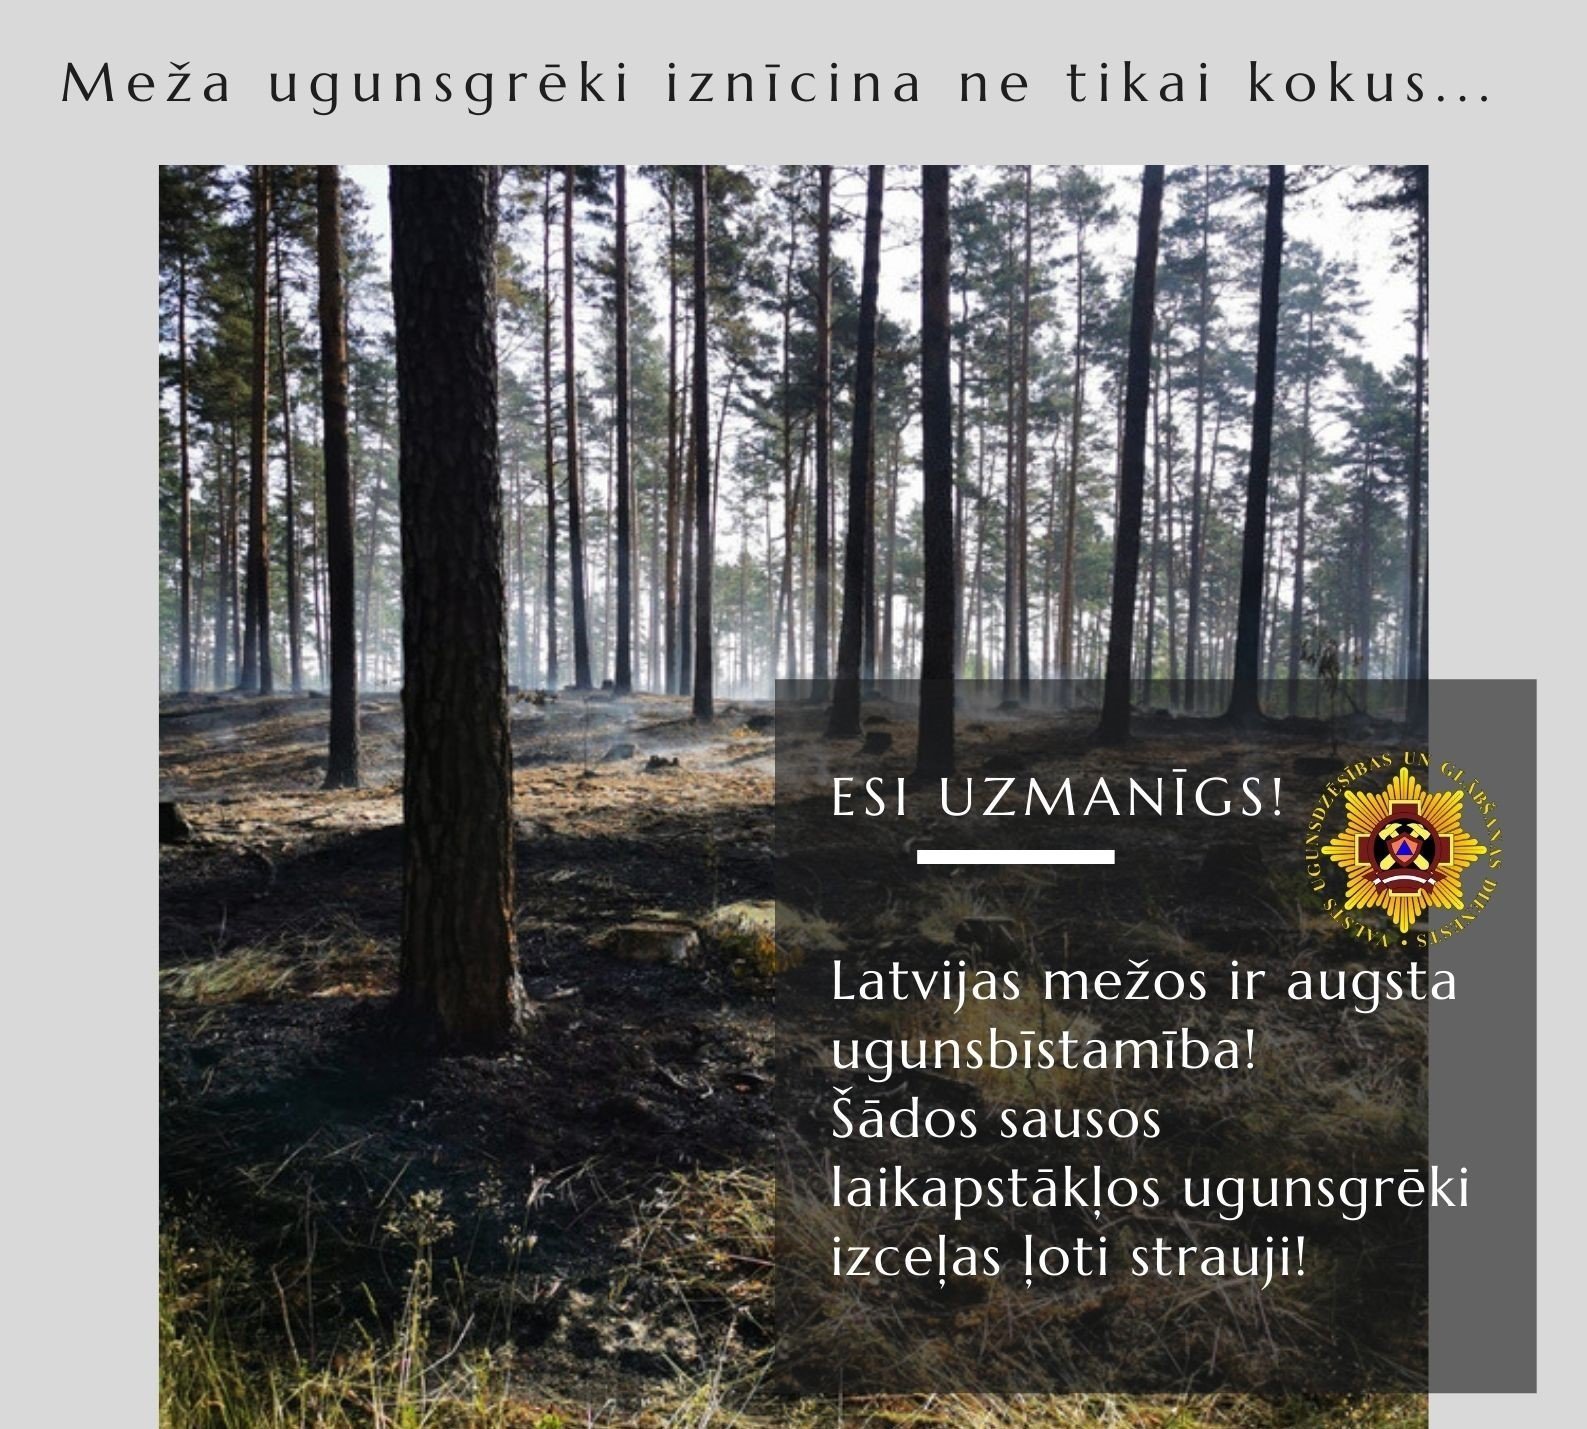 Mežos visā Latvijā ir augsta ugunsbīstamība!